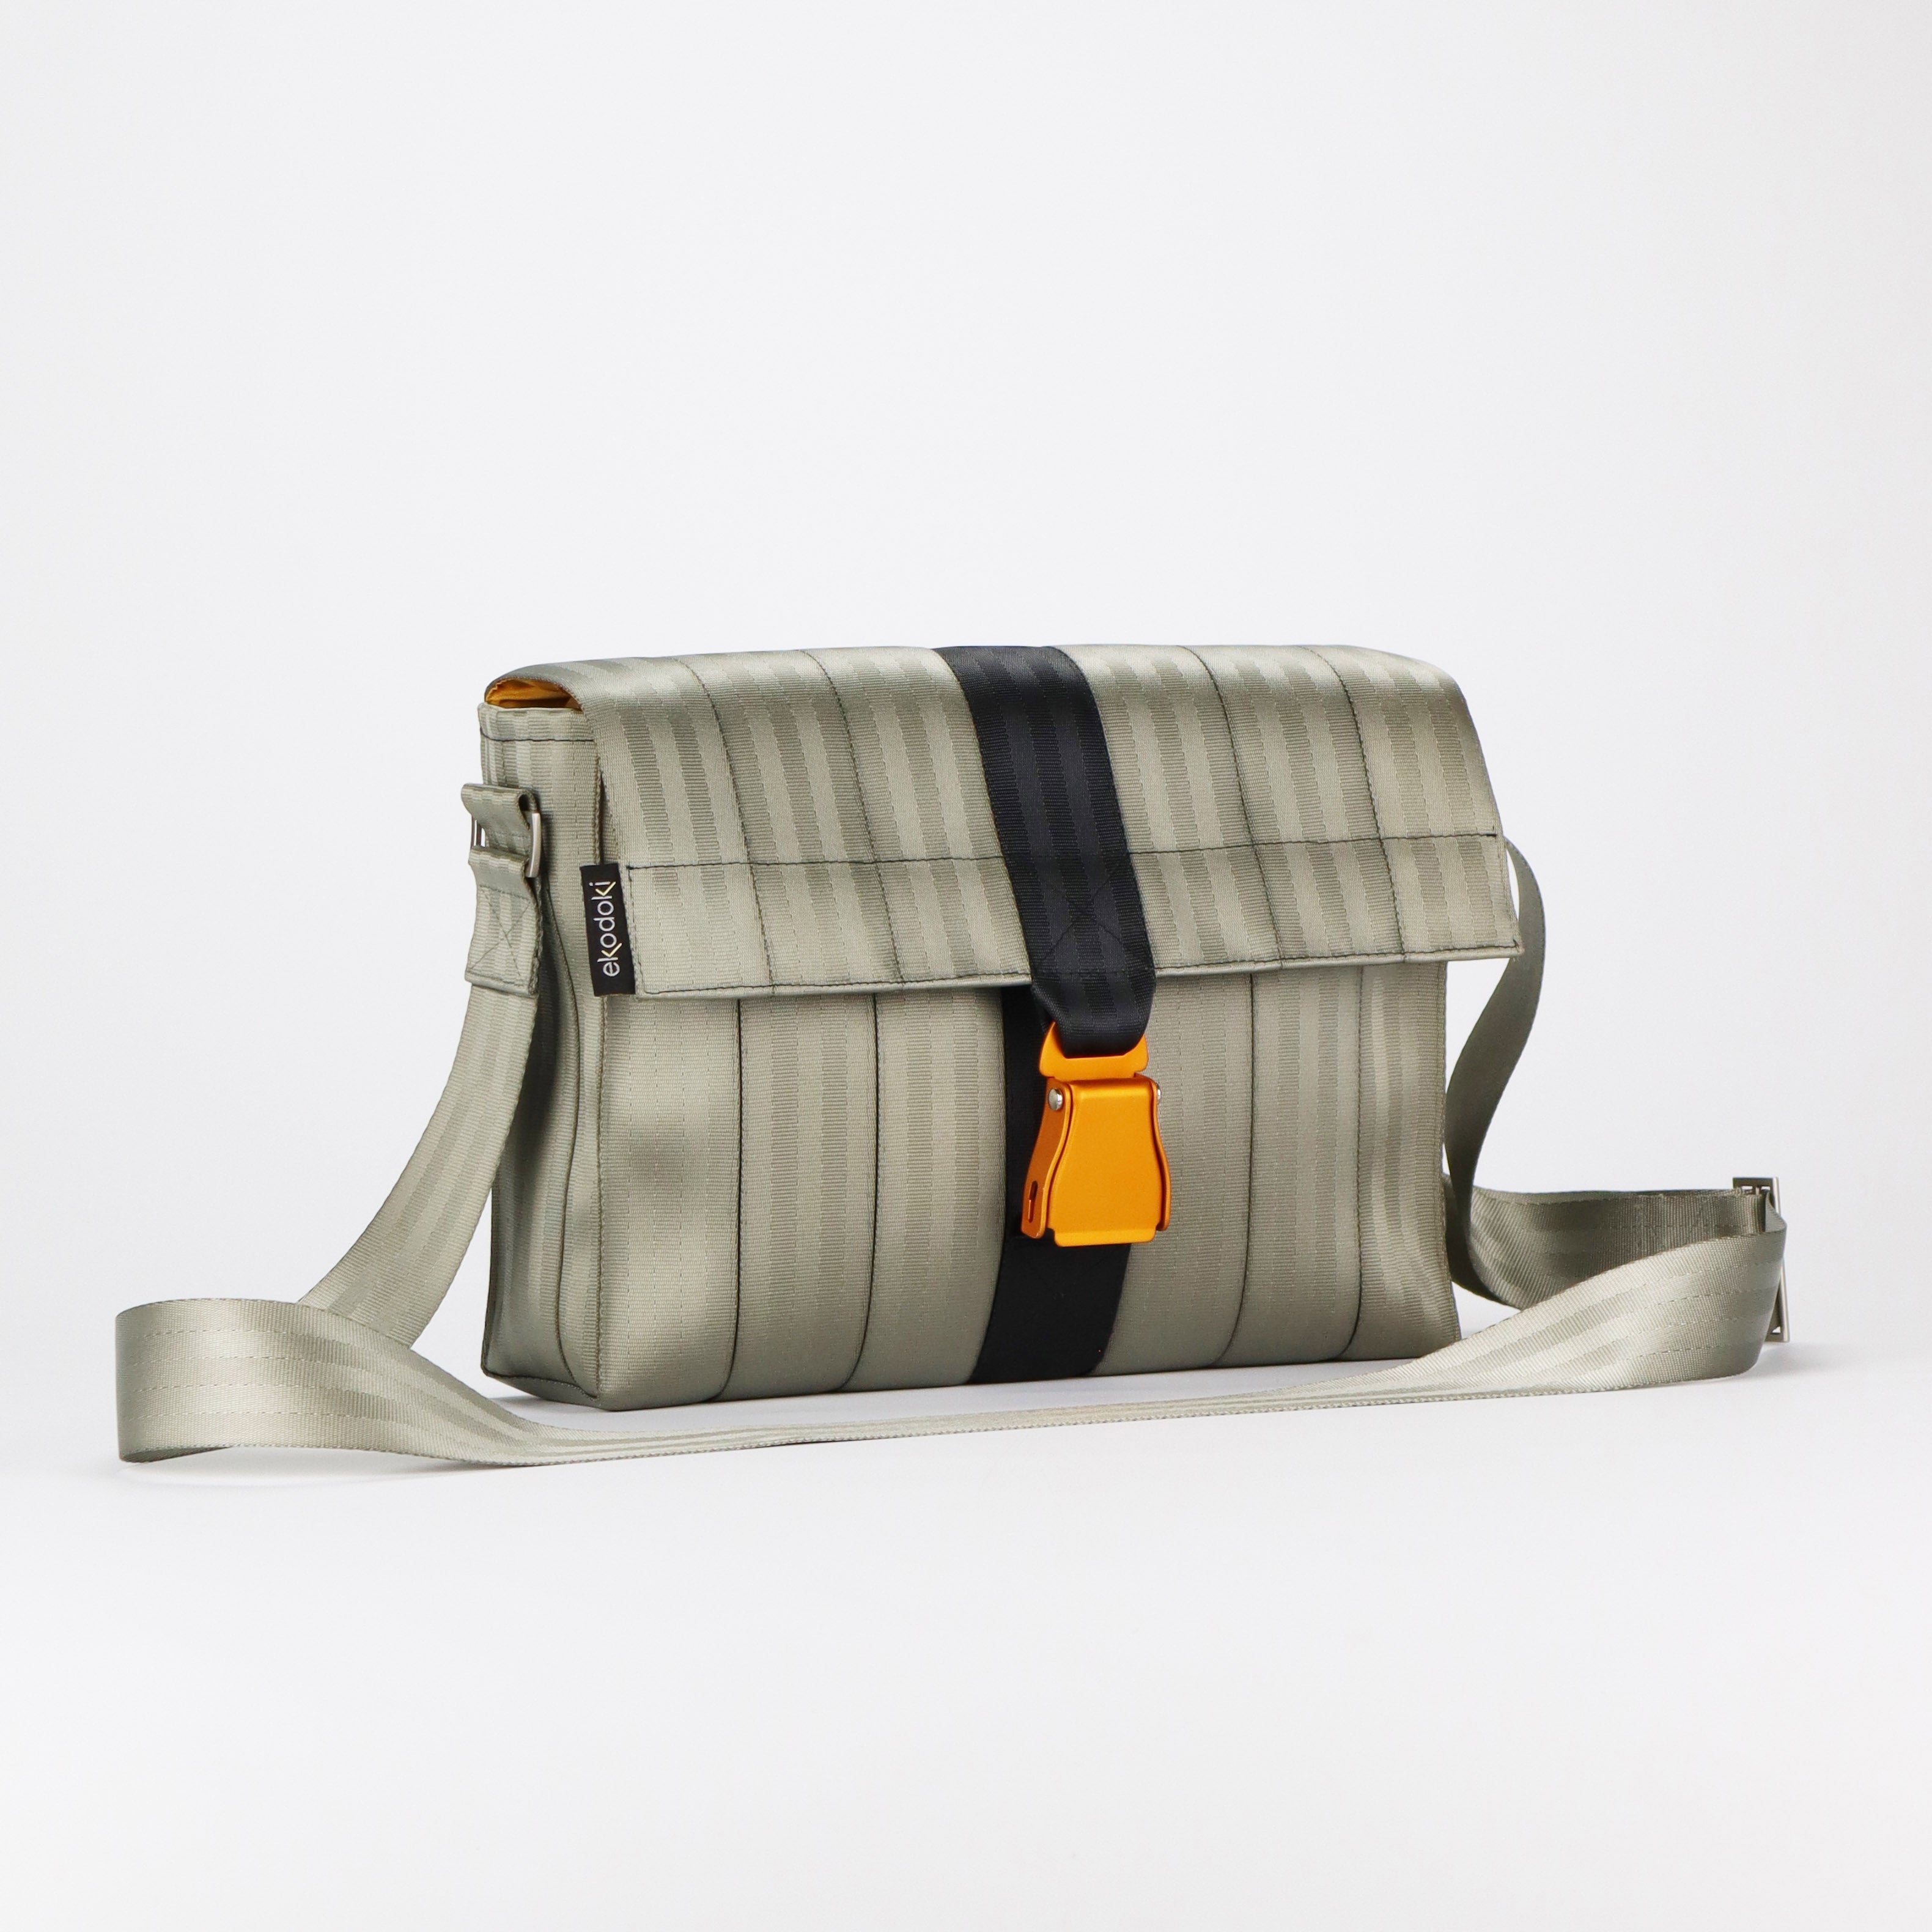 Harveys Seatbelt Bags Bow Clutch, Robins Egg : Amazon.in: Fashion